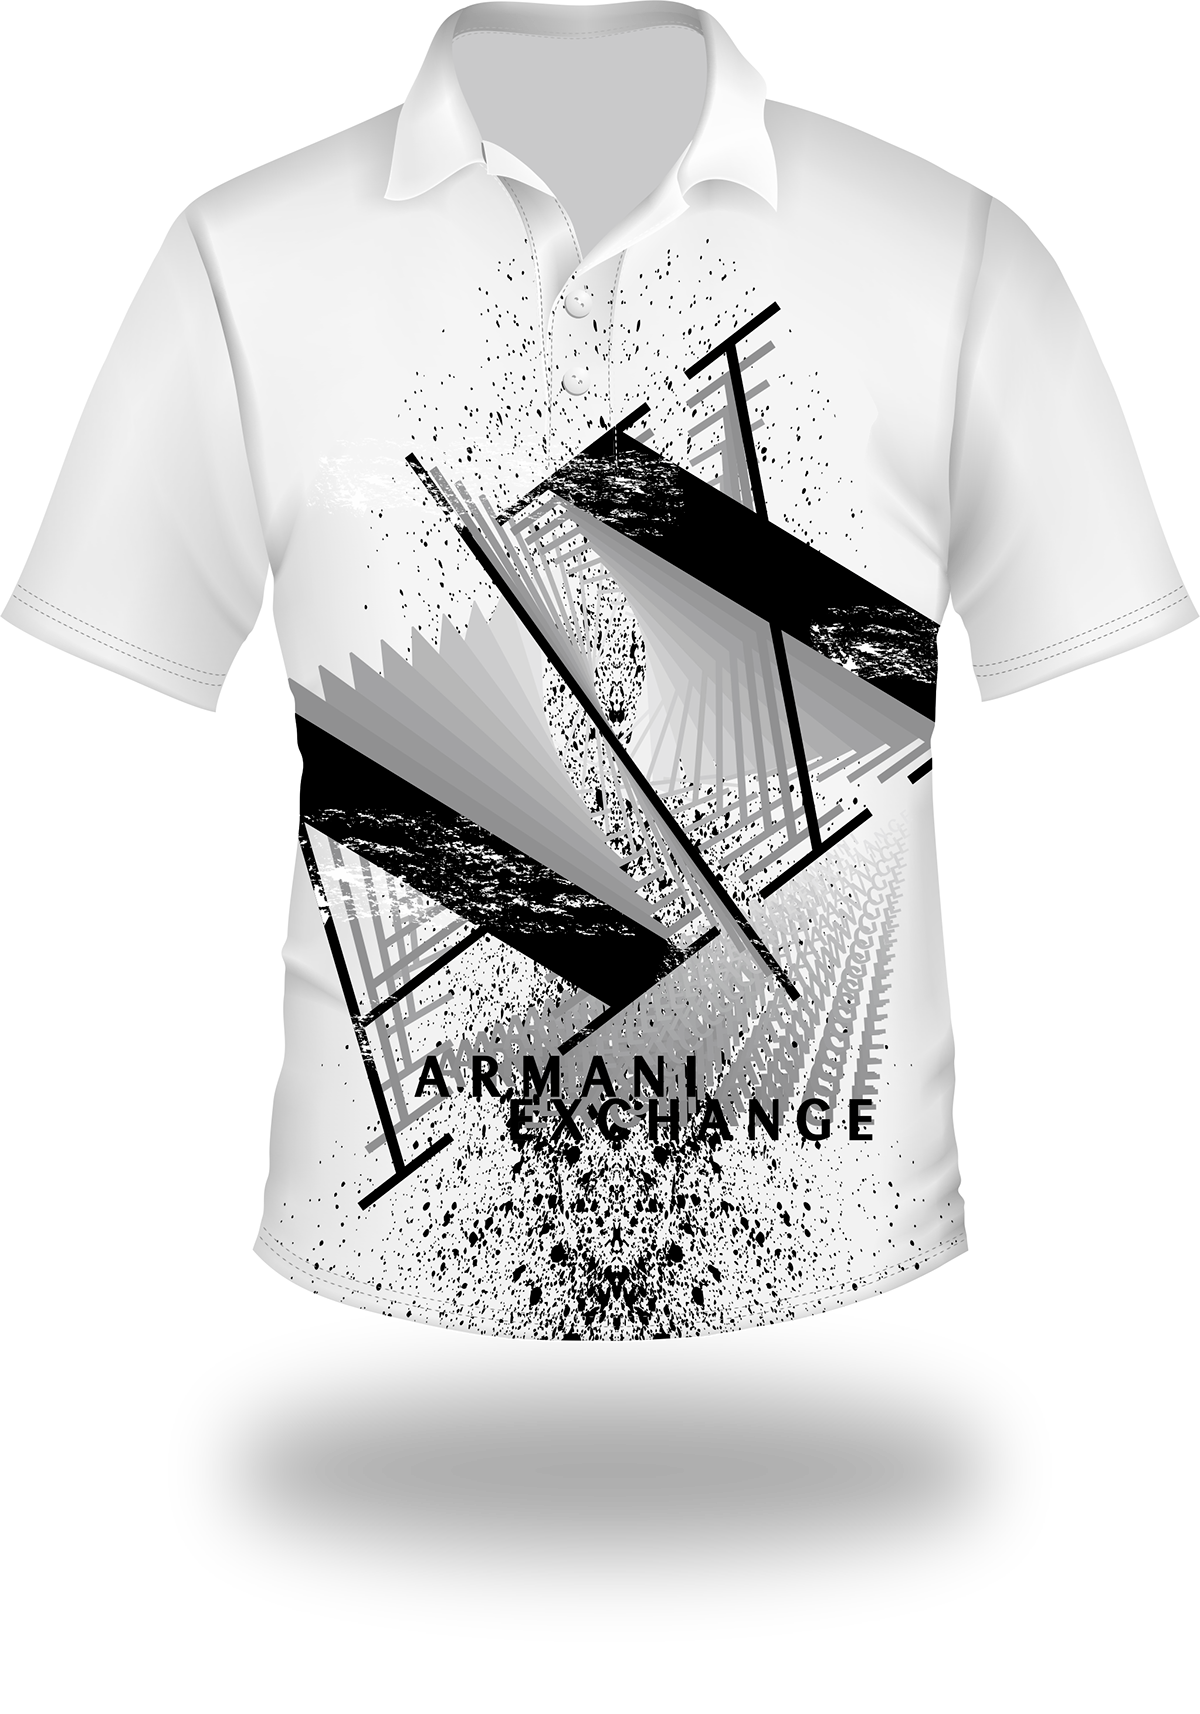 ax shirt polo camiseta 3D grunge men moda black armani exchange textura